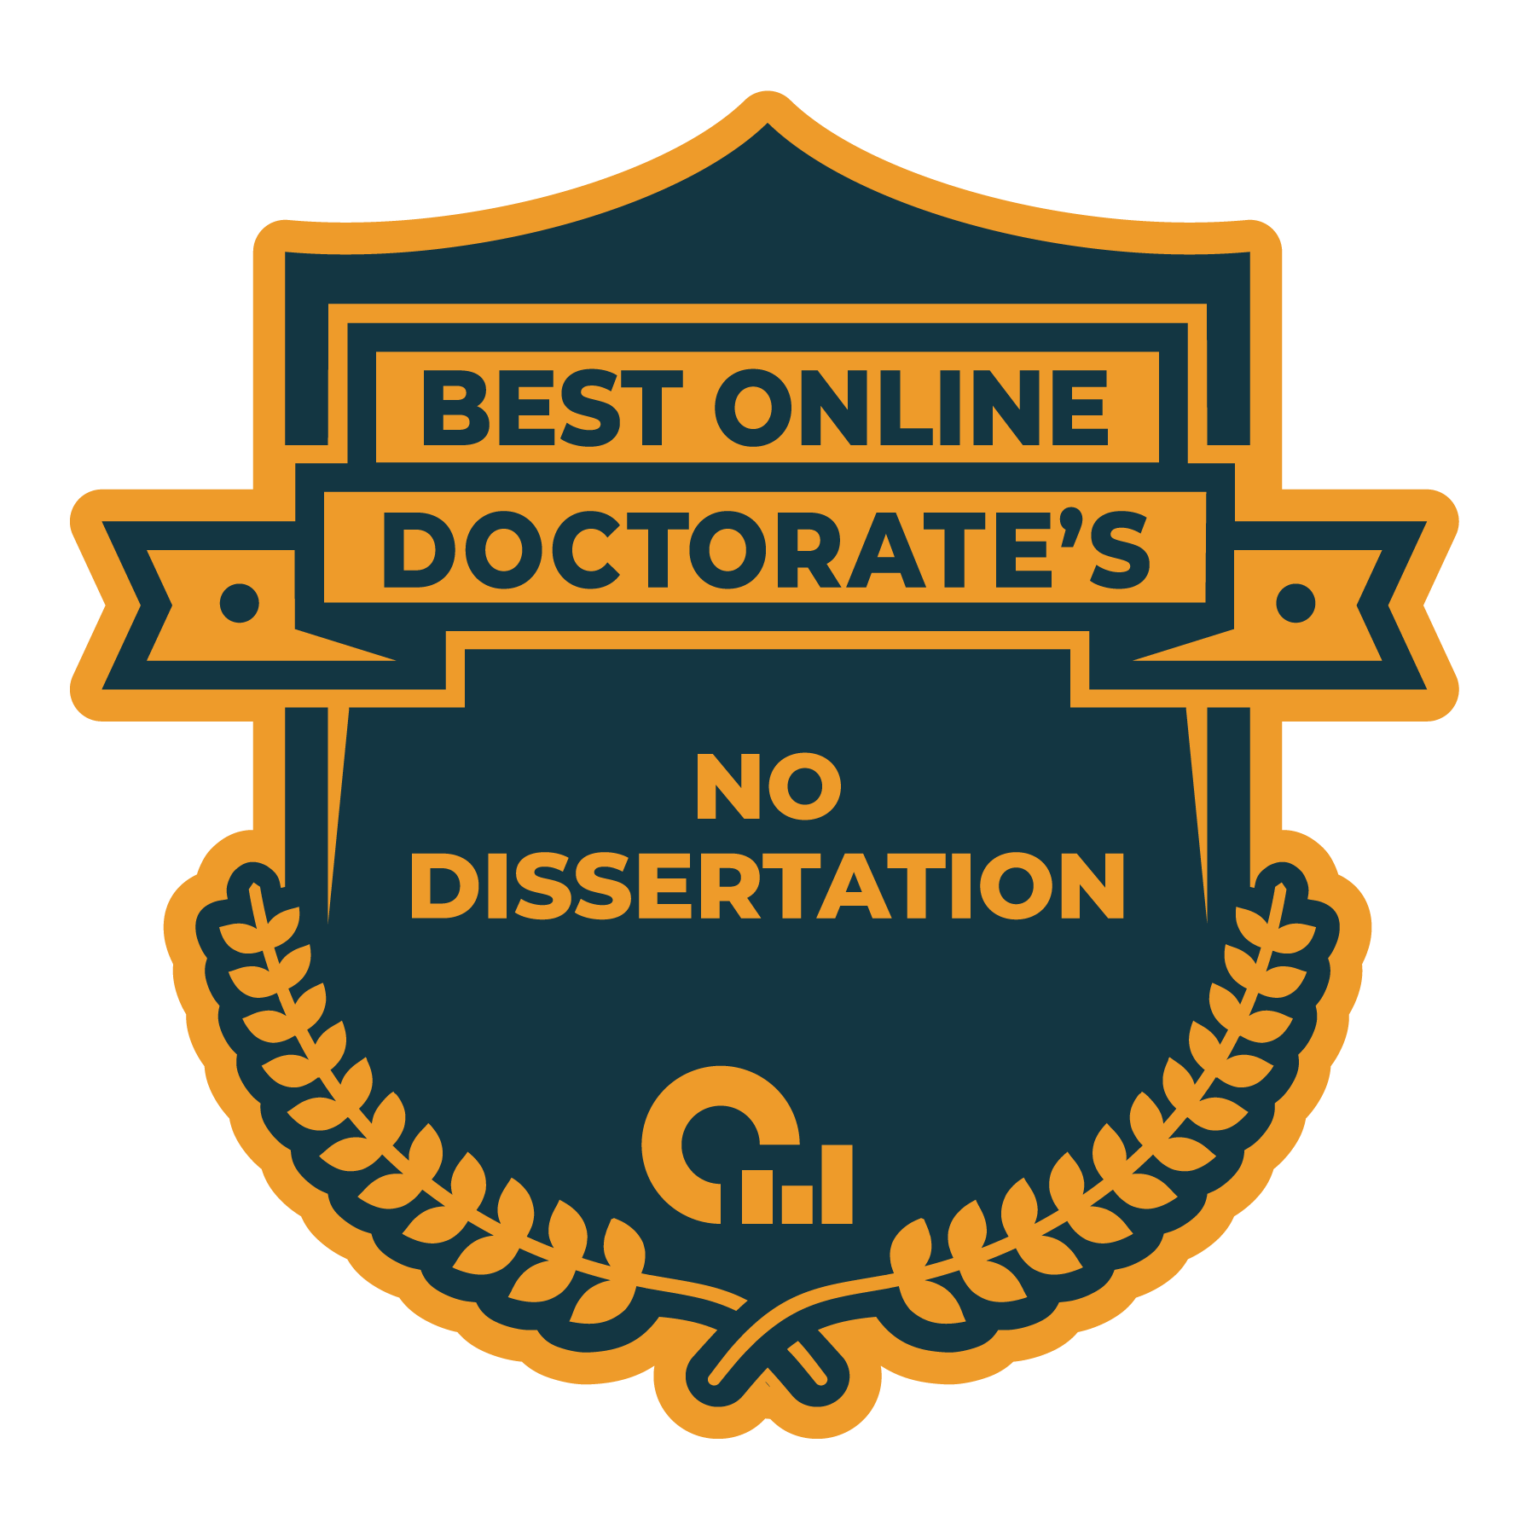 no dissertation doctorate online